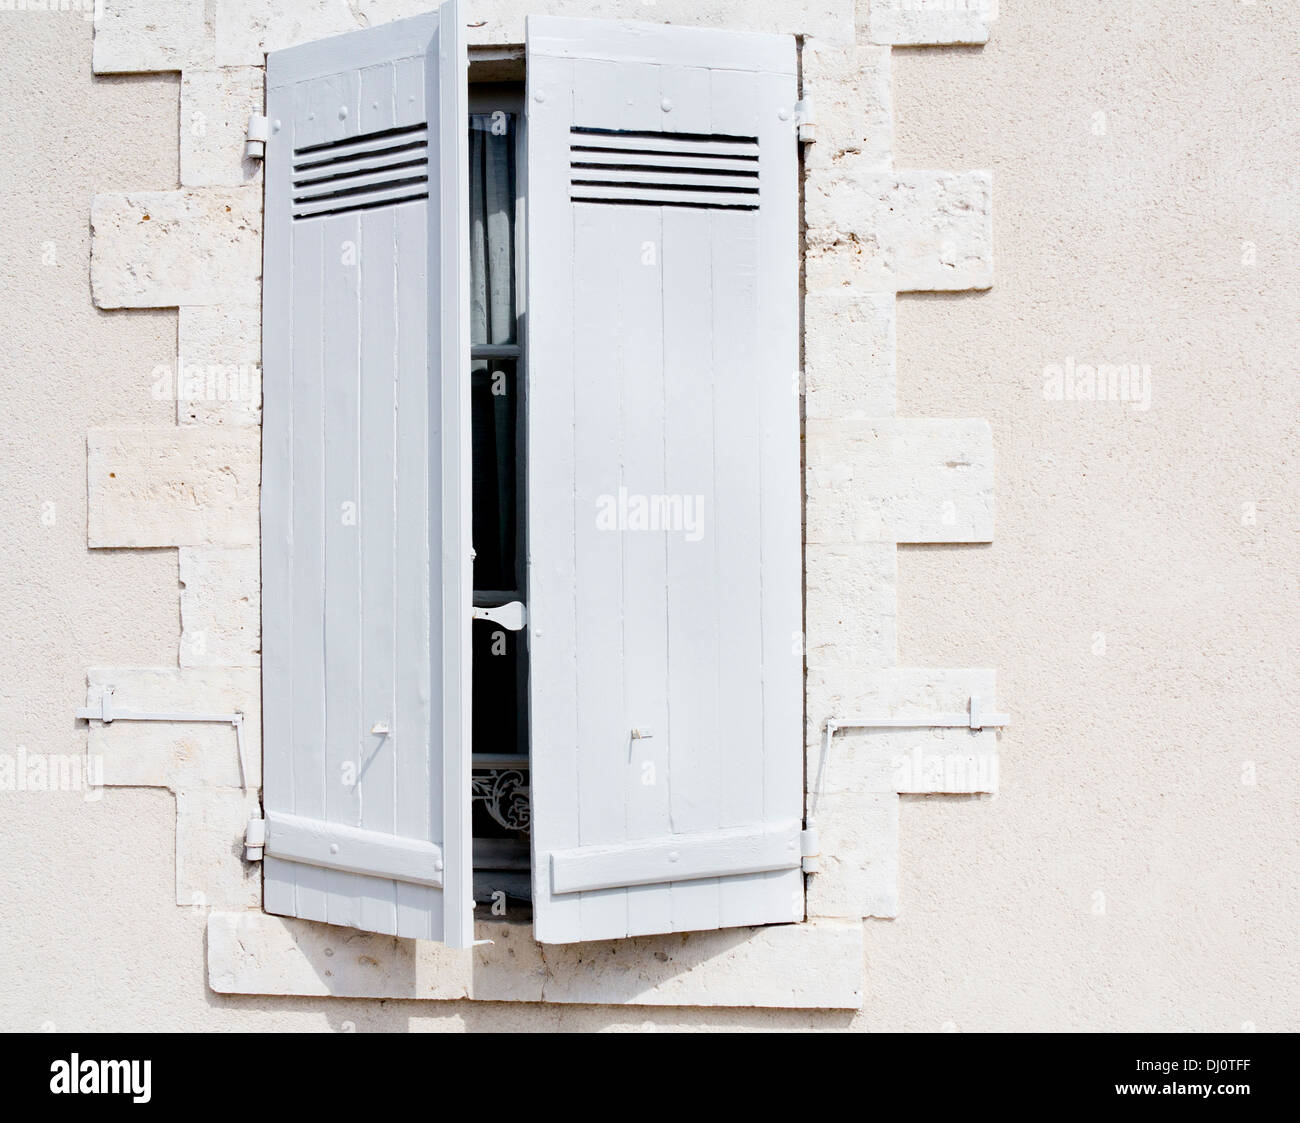 Diese Jalousien sind typisch für den Stil auf viele Tausende von Altbauten in Frankreich in Kraft gesetzt. Weiß auf Wollweiß Wände. Stockfoto